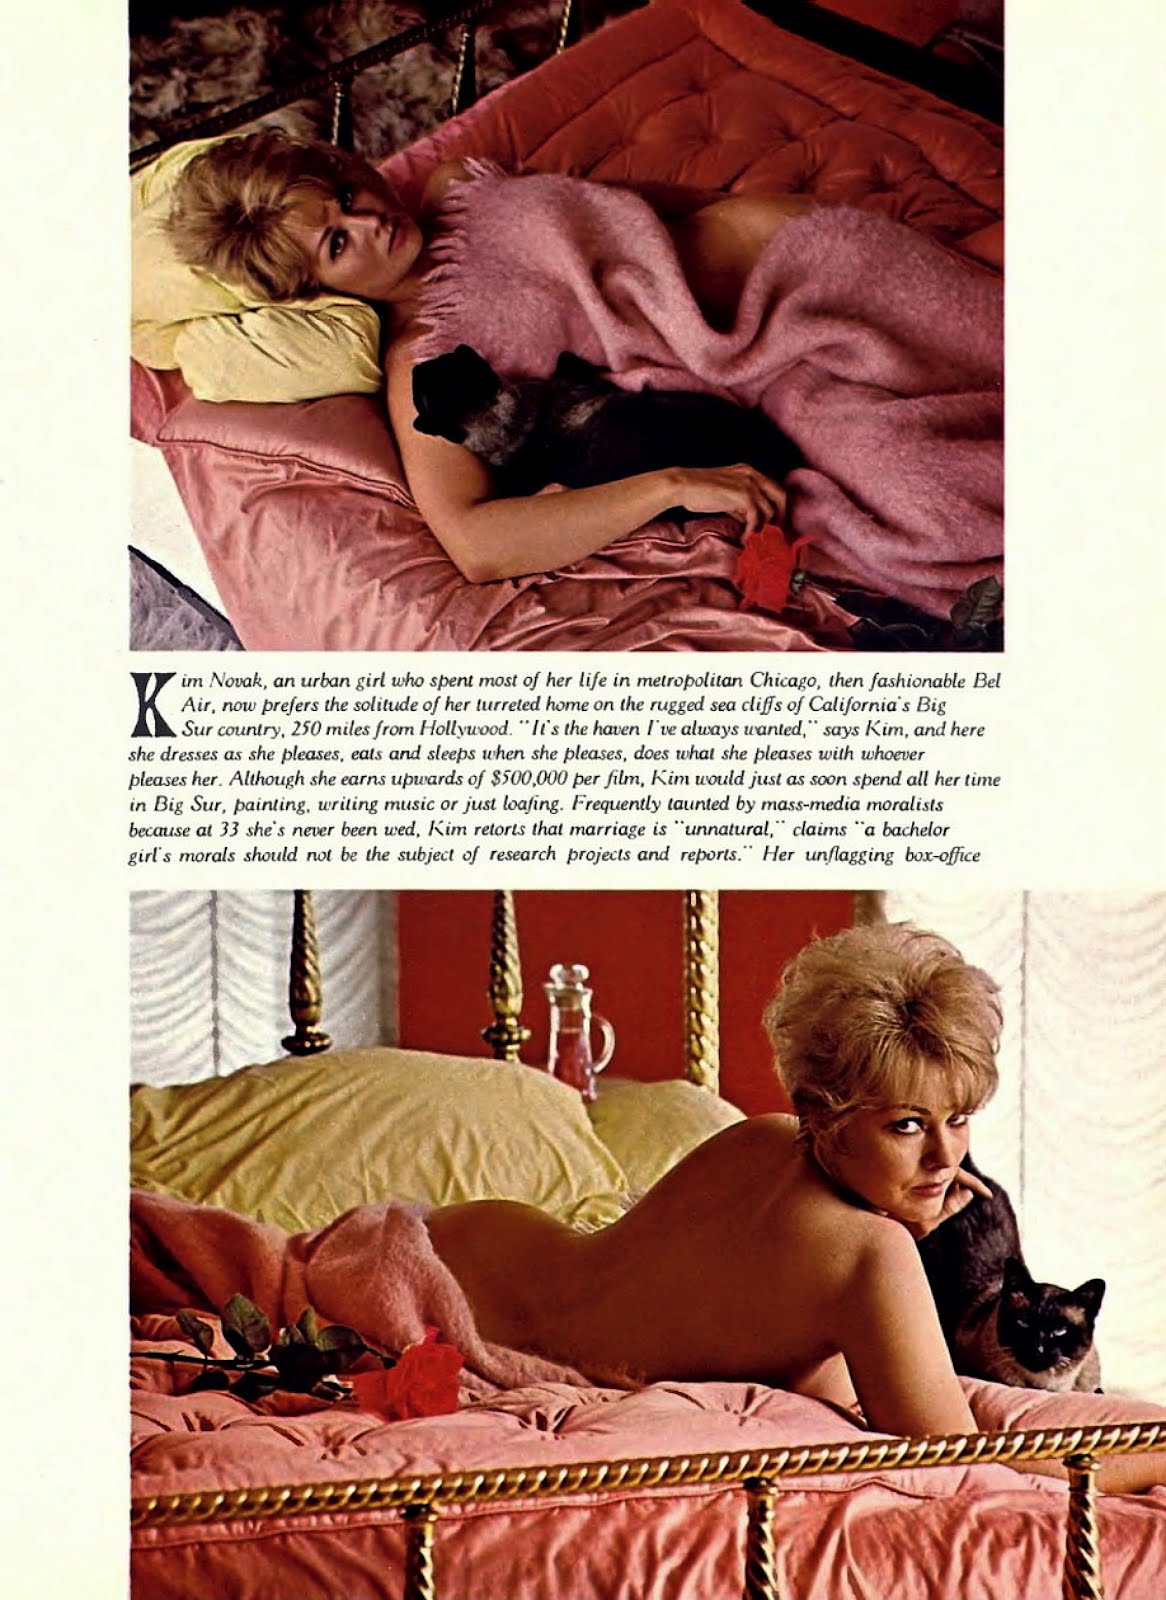 At Home With Kim Novak - Playboy, 1965.